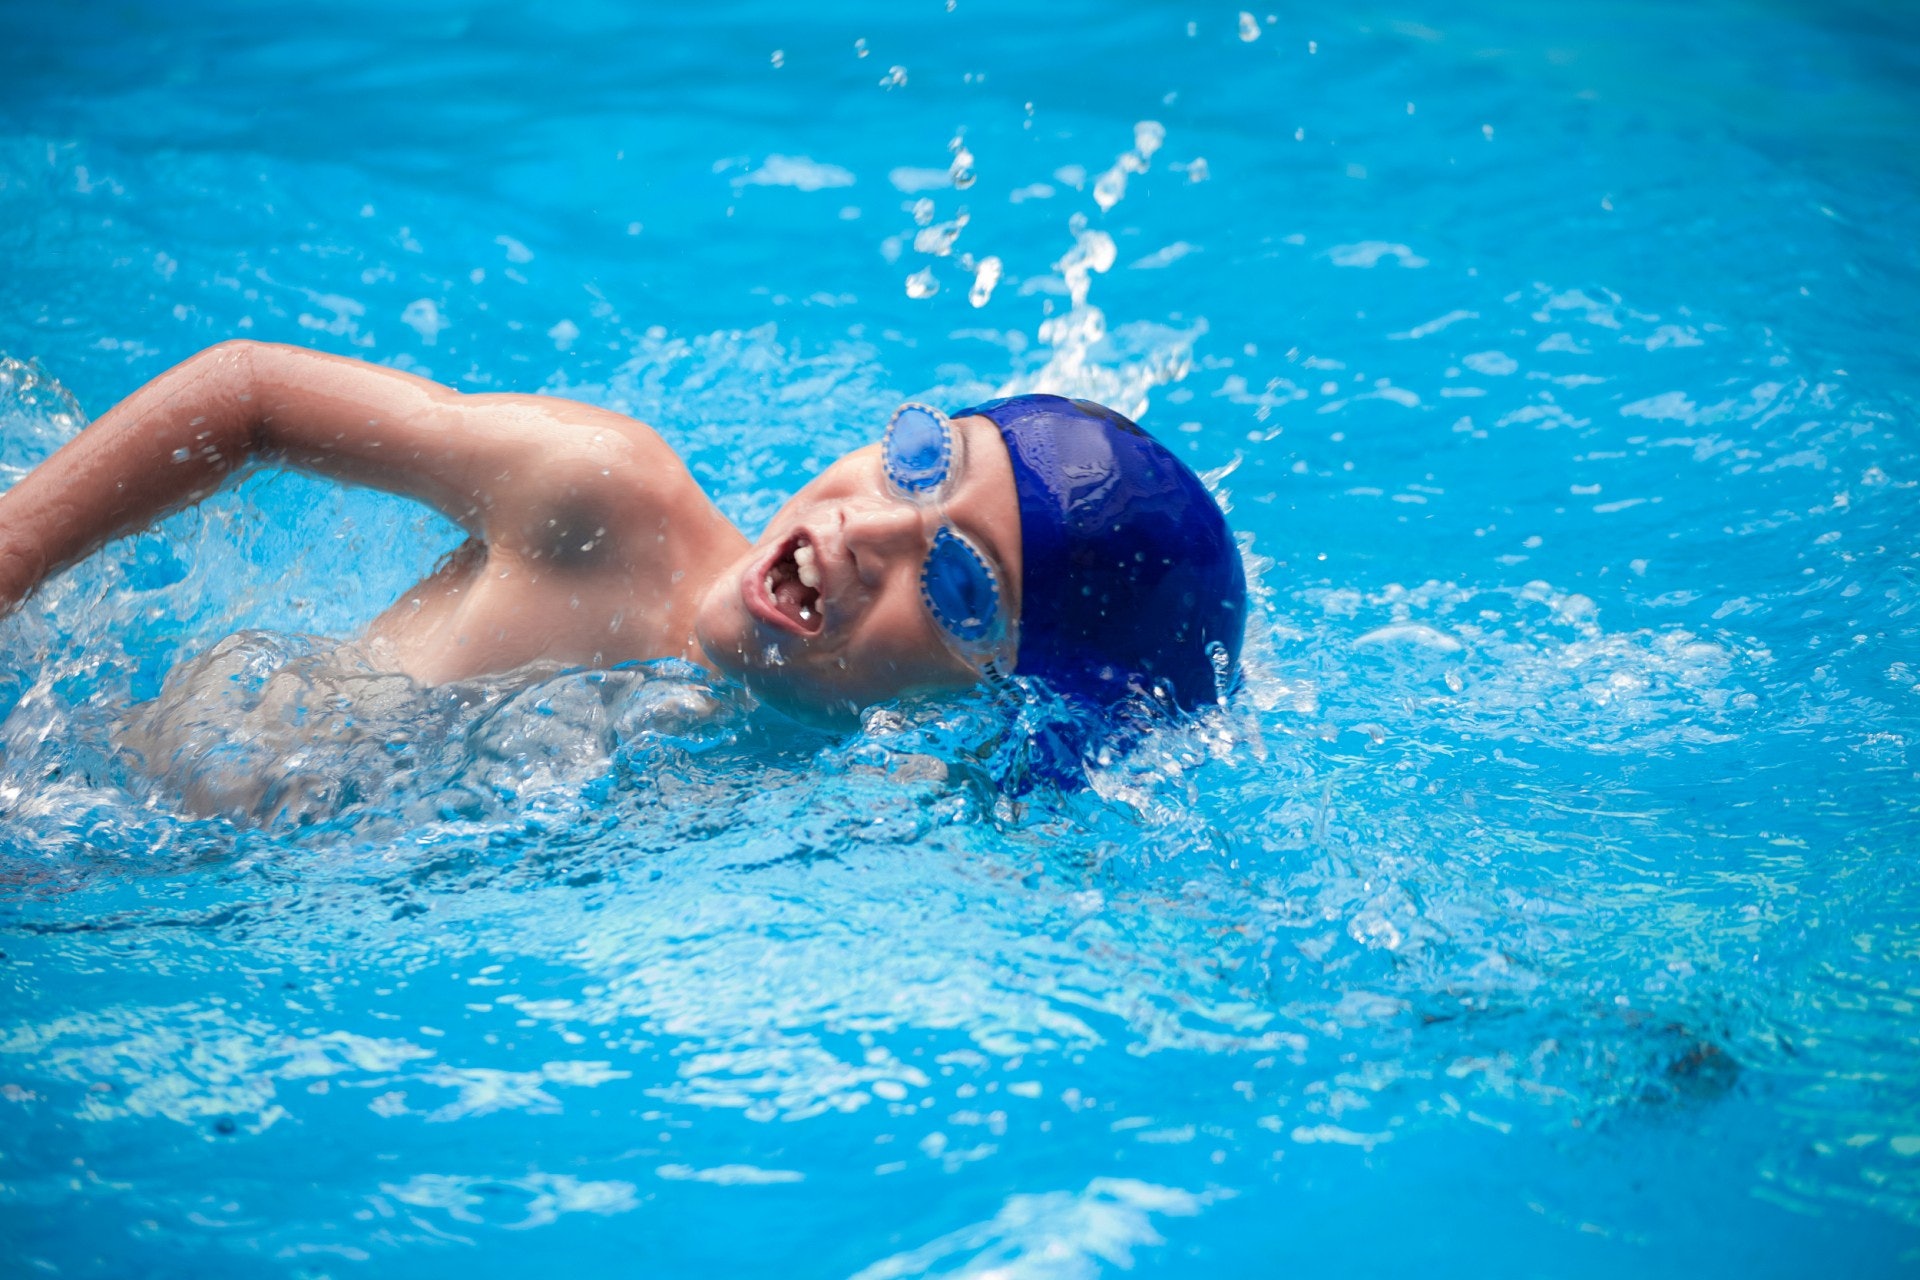 衞生防護中心指，受感染紅眼症患者，在痊癒前應避免游泳，以防傳染他人。（VCG）